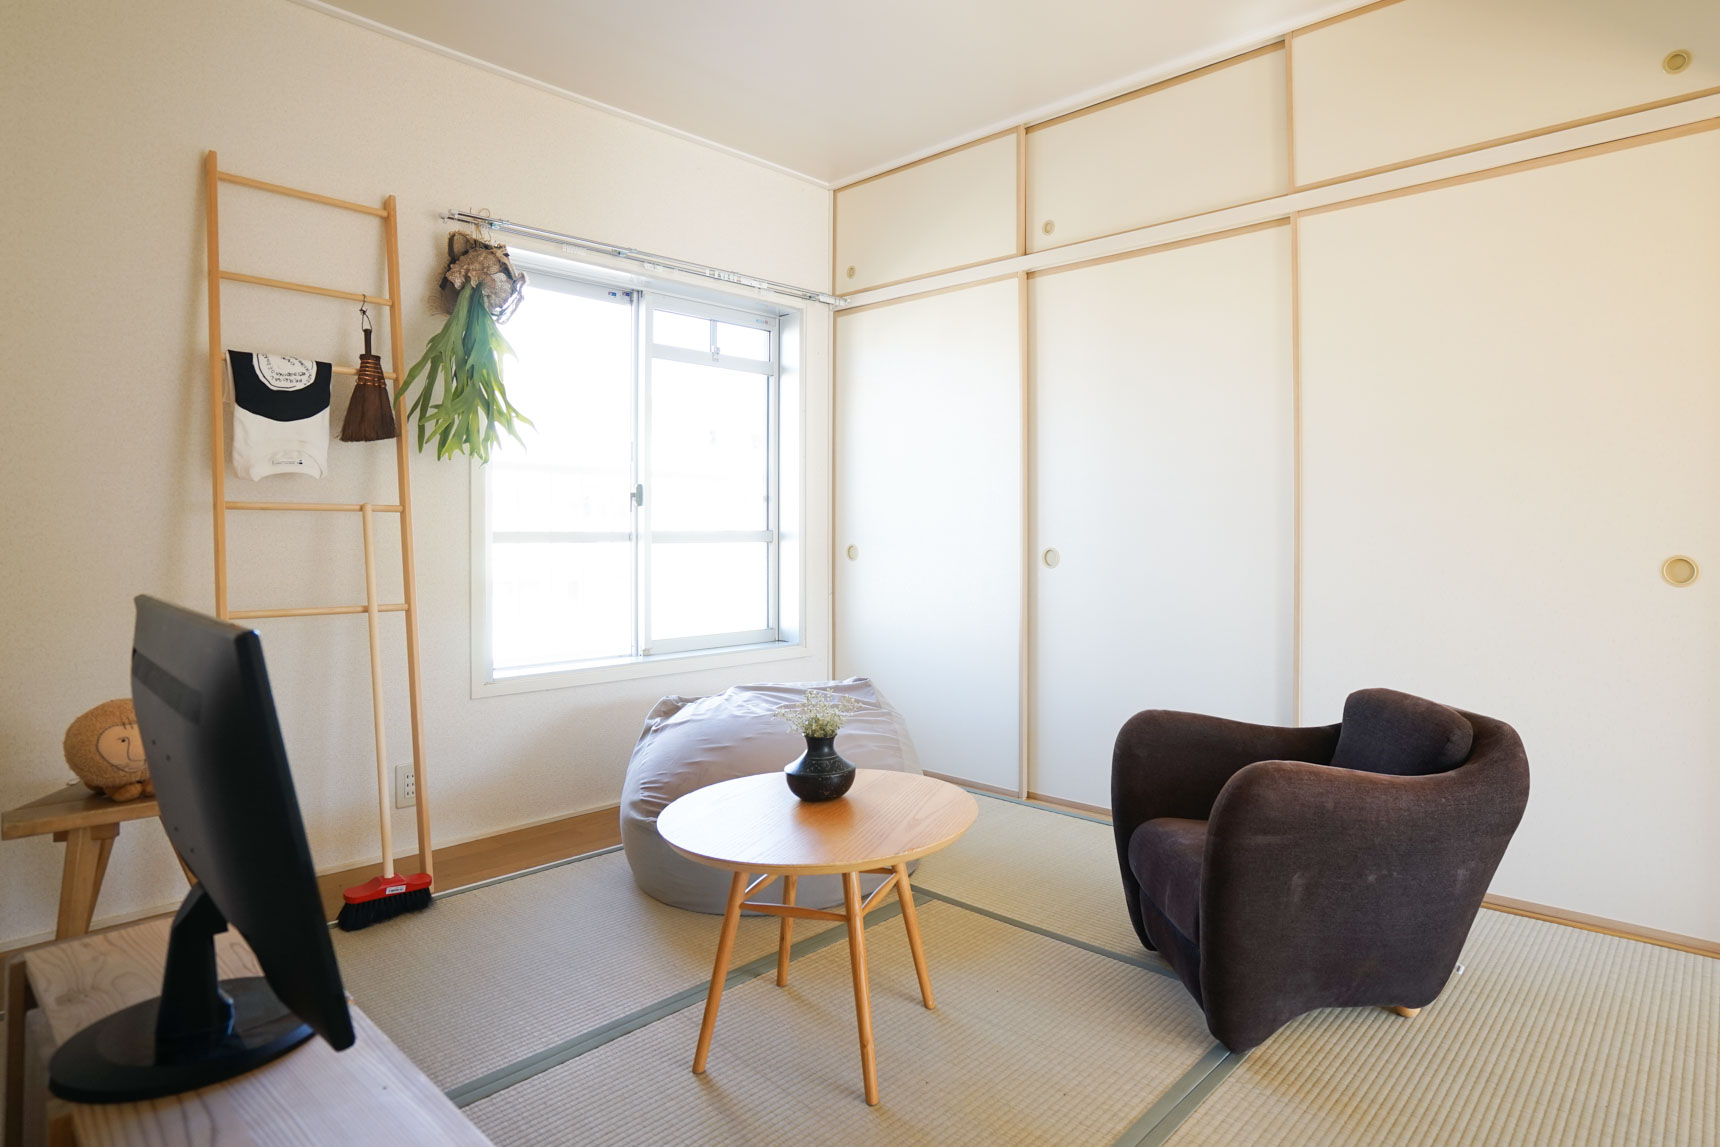 比較的築年数の経っている和室のお部屋は、コンパクトなサイズの家具が便利。そんなときは移動しやすい家具であるプフを活用するのもおすすめです。